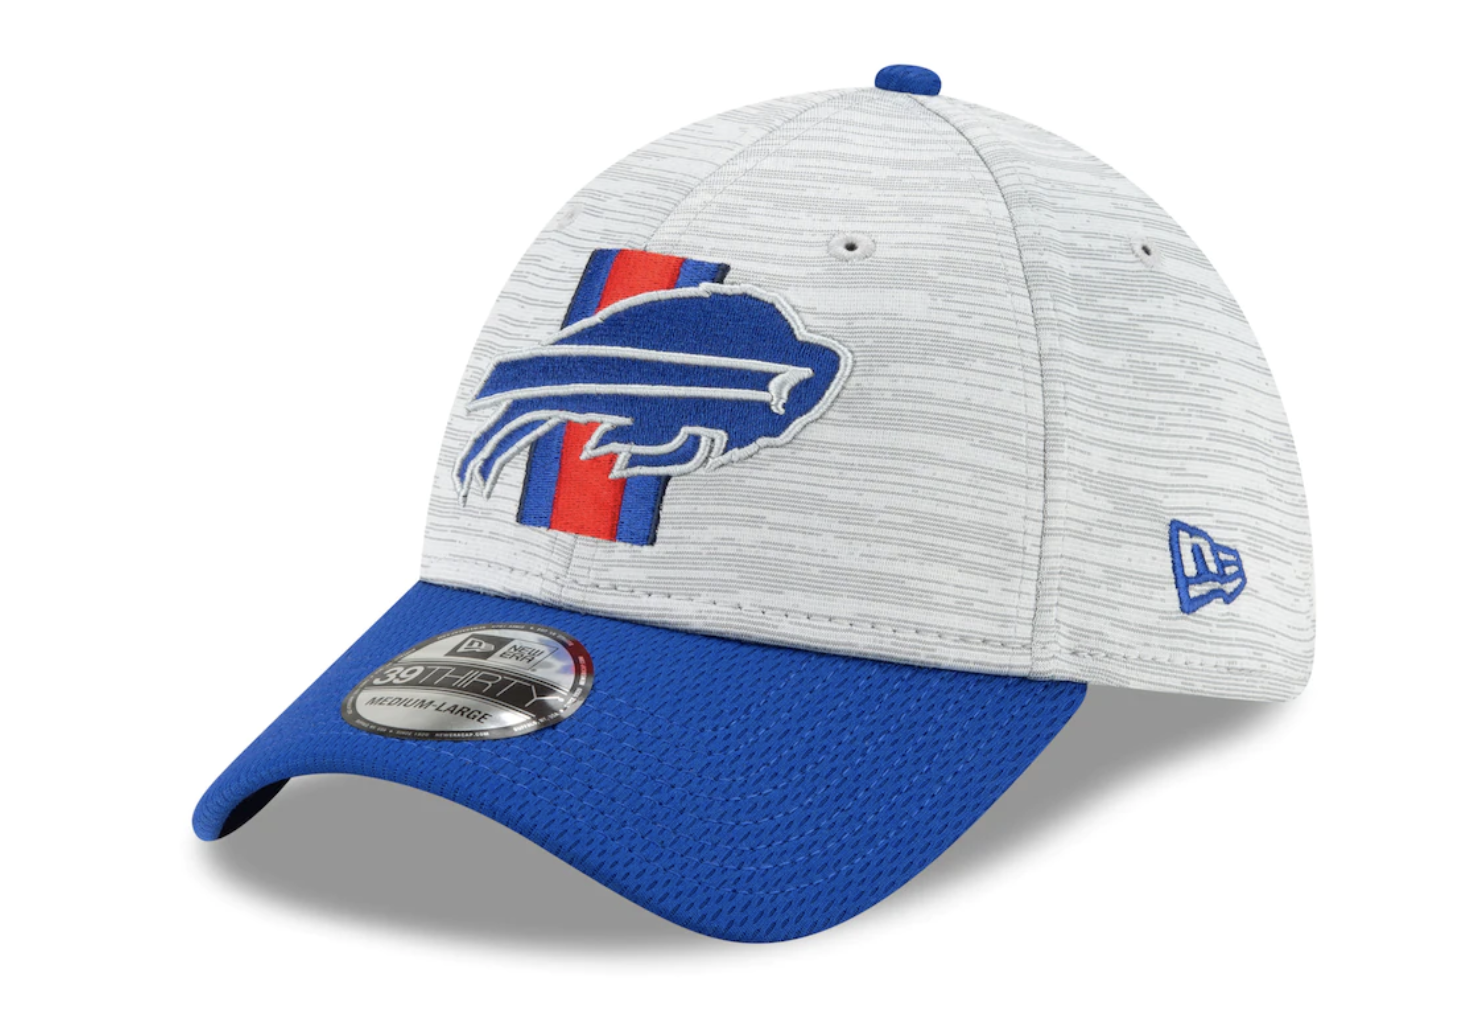 NFL Training Camp hats: Buffalo Bills, NY Giants, Jets caps, bucket hats,  visors are available now 